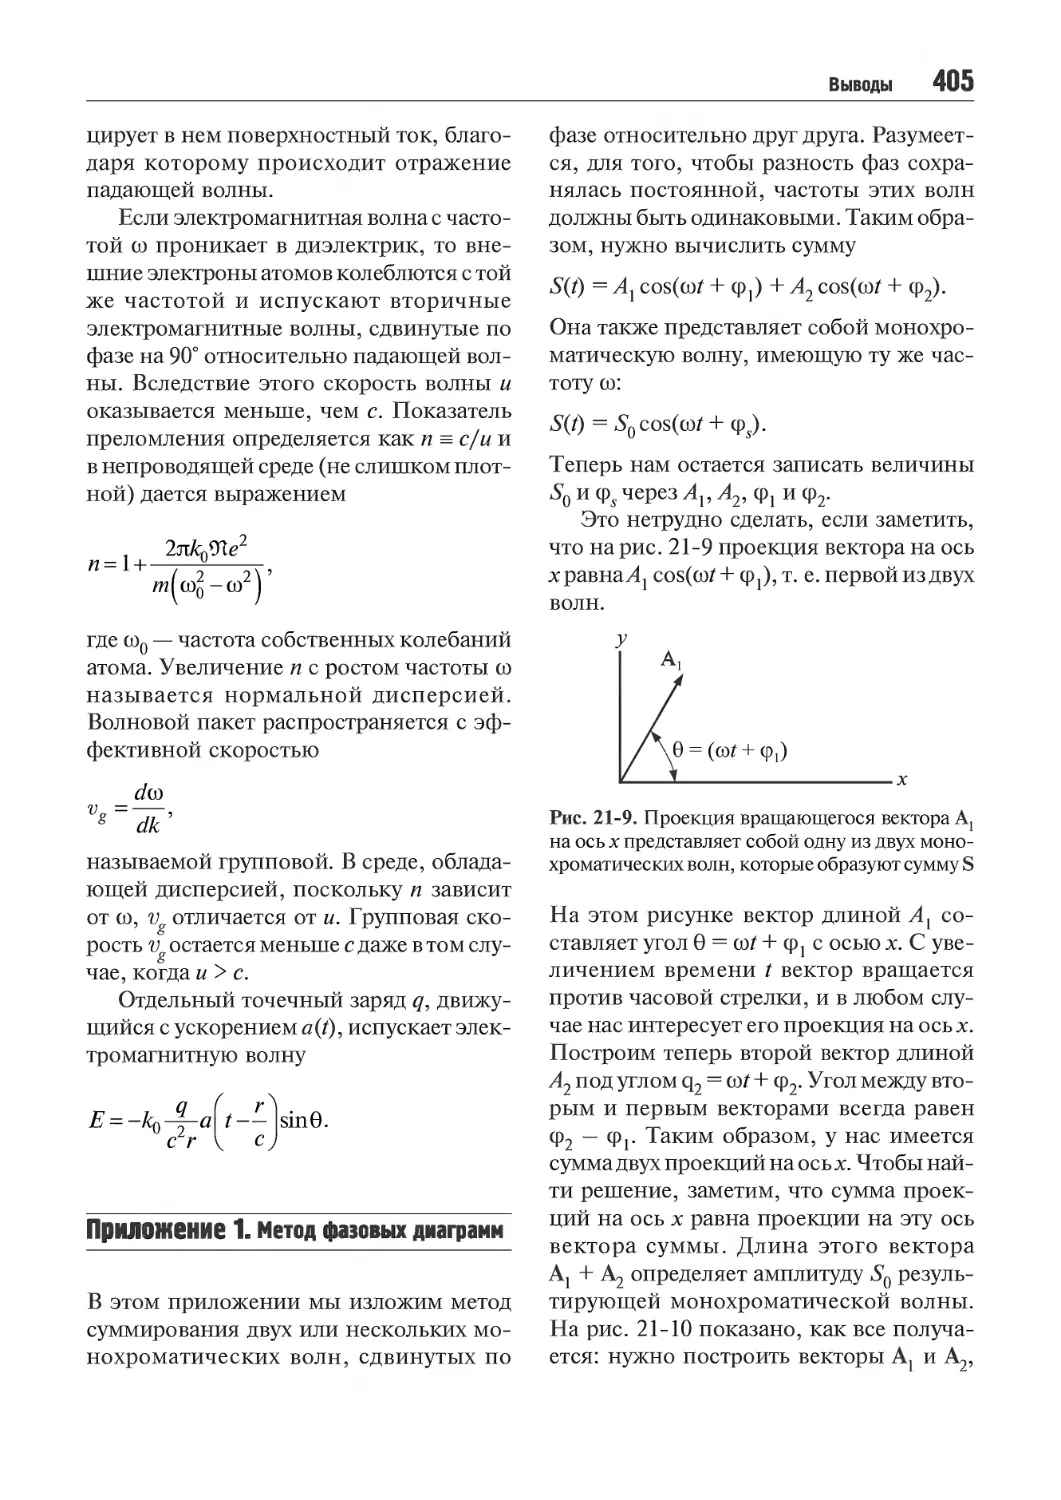 Приложение1. Метод фазовых диаграмм